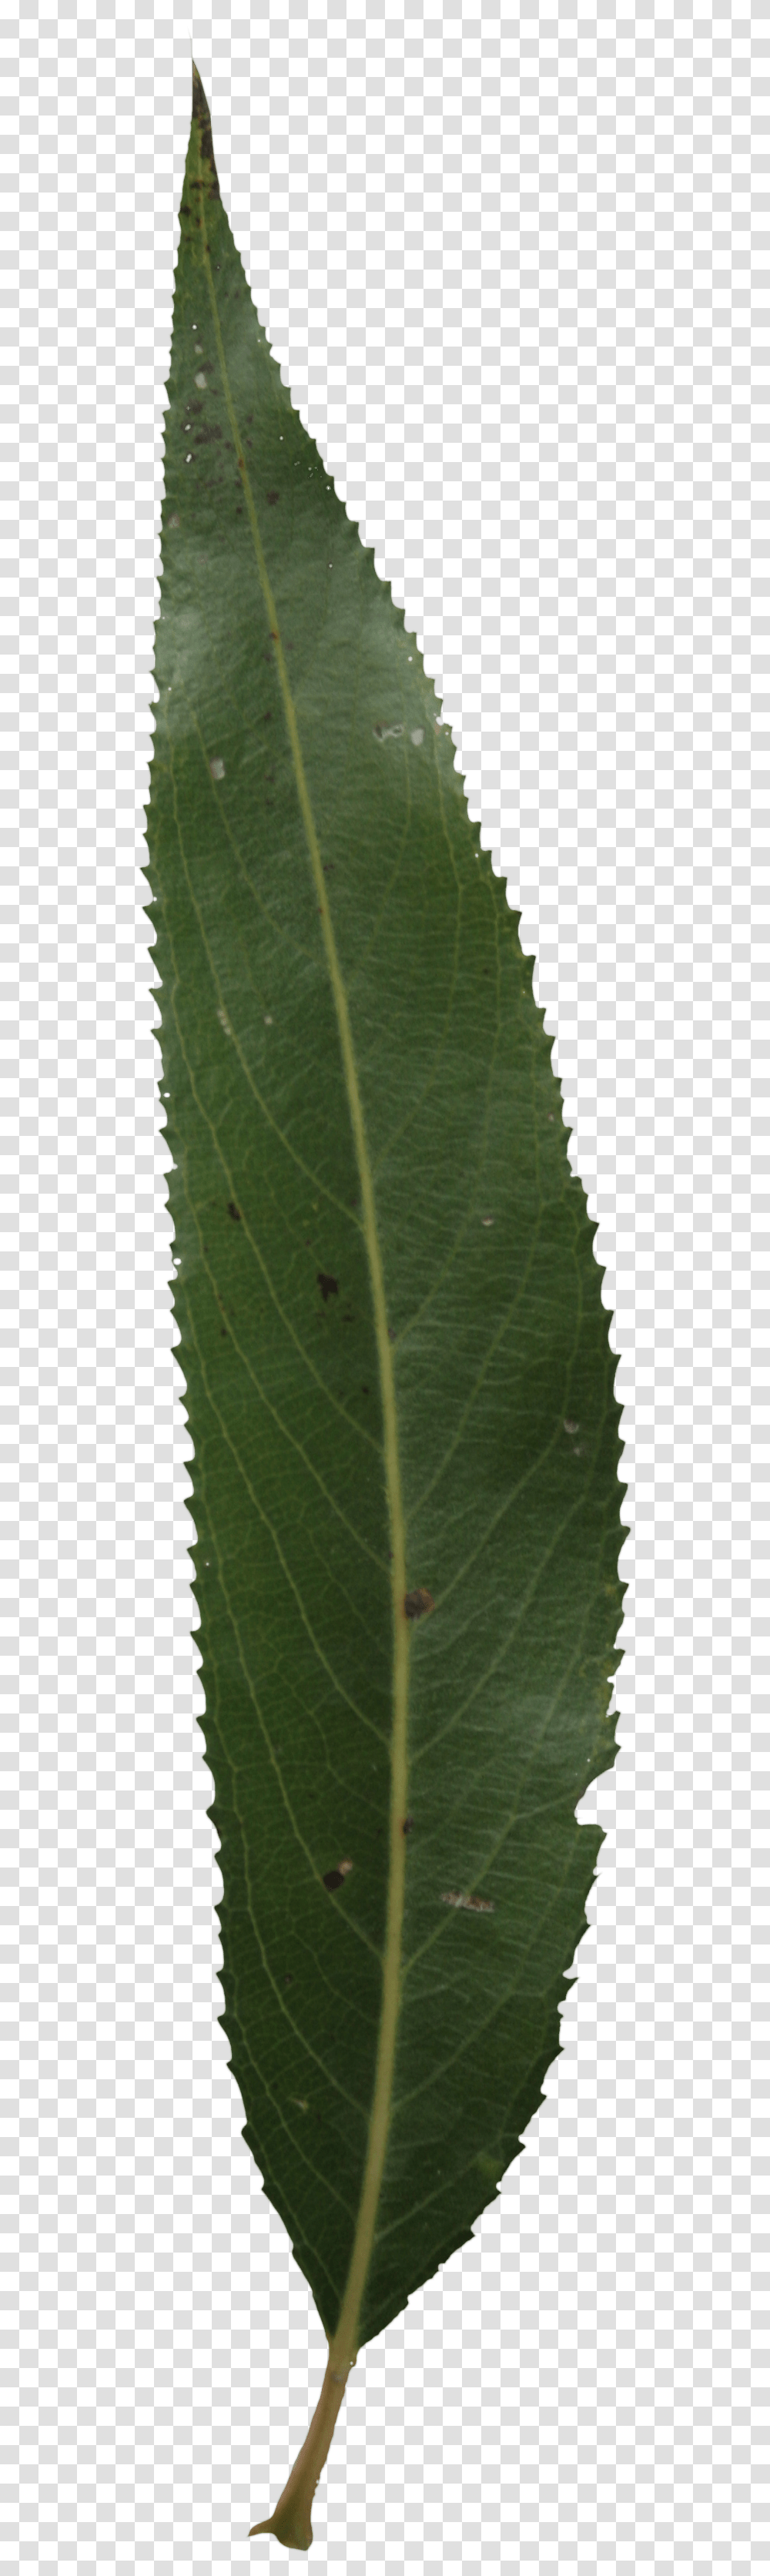 Single Green Leaf Single Mango Leaf, Veins, Plant Transparent Png